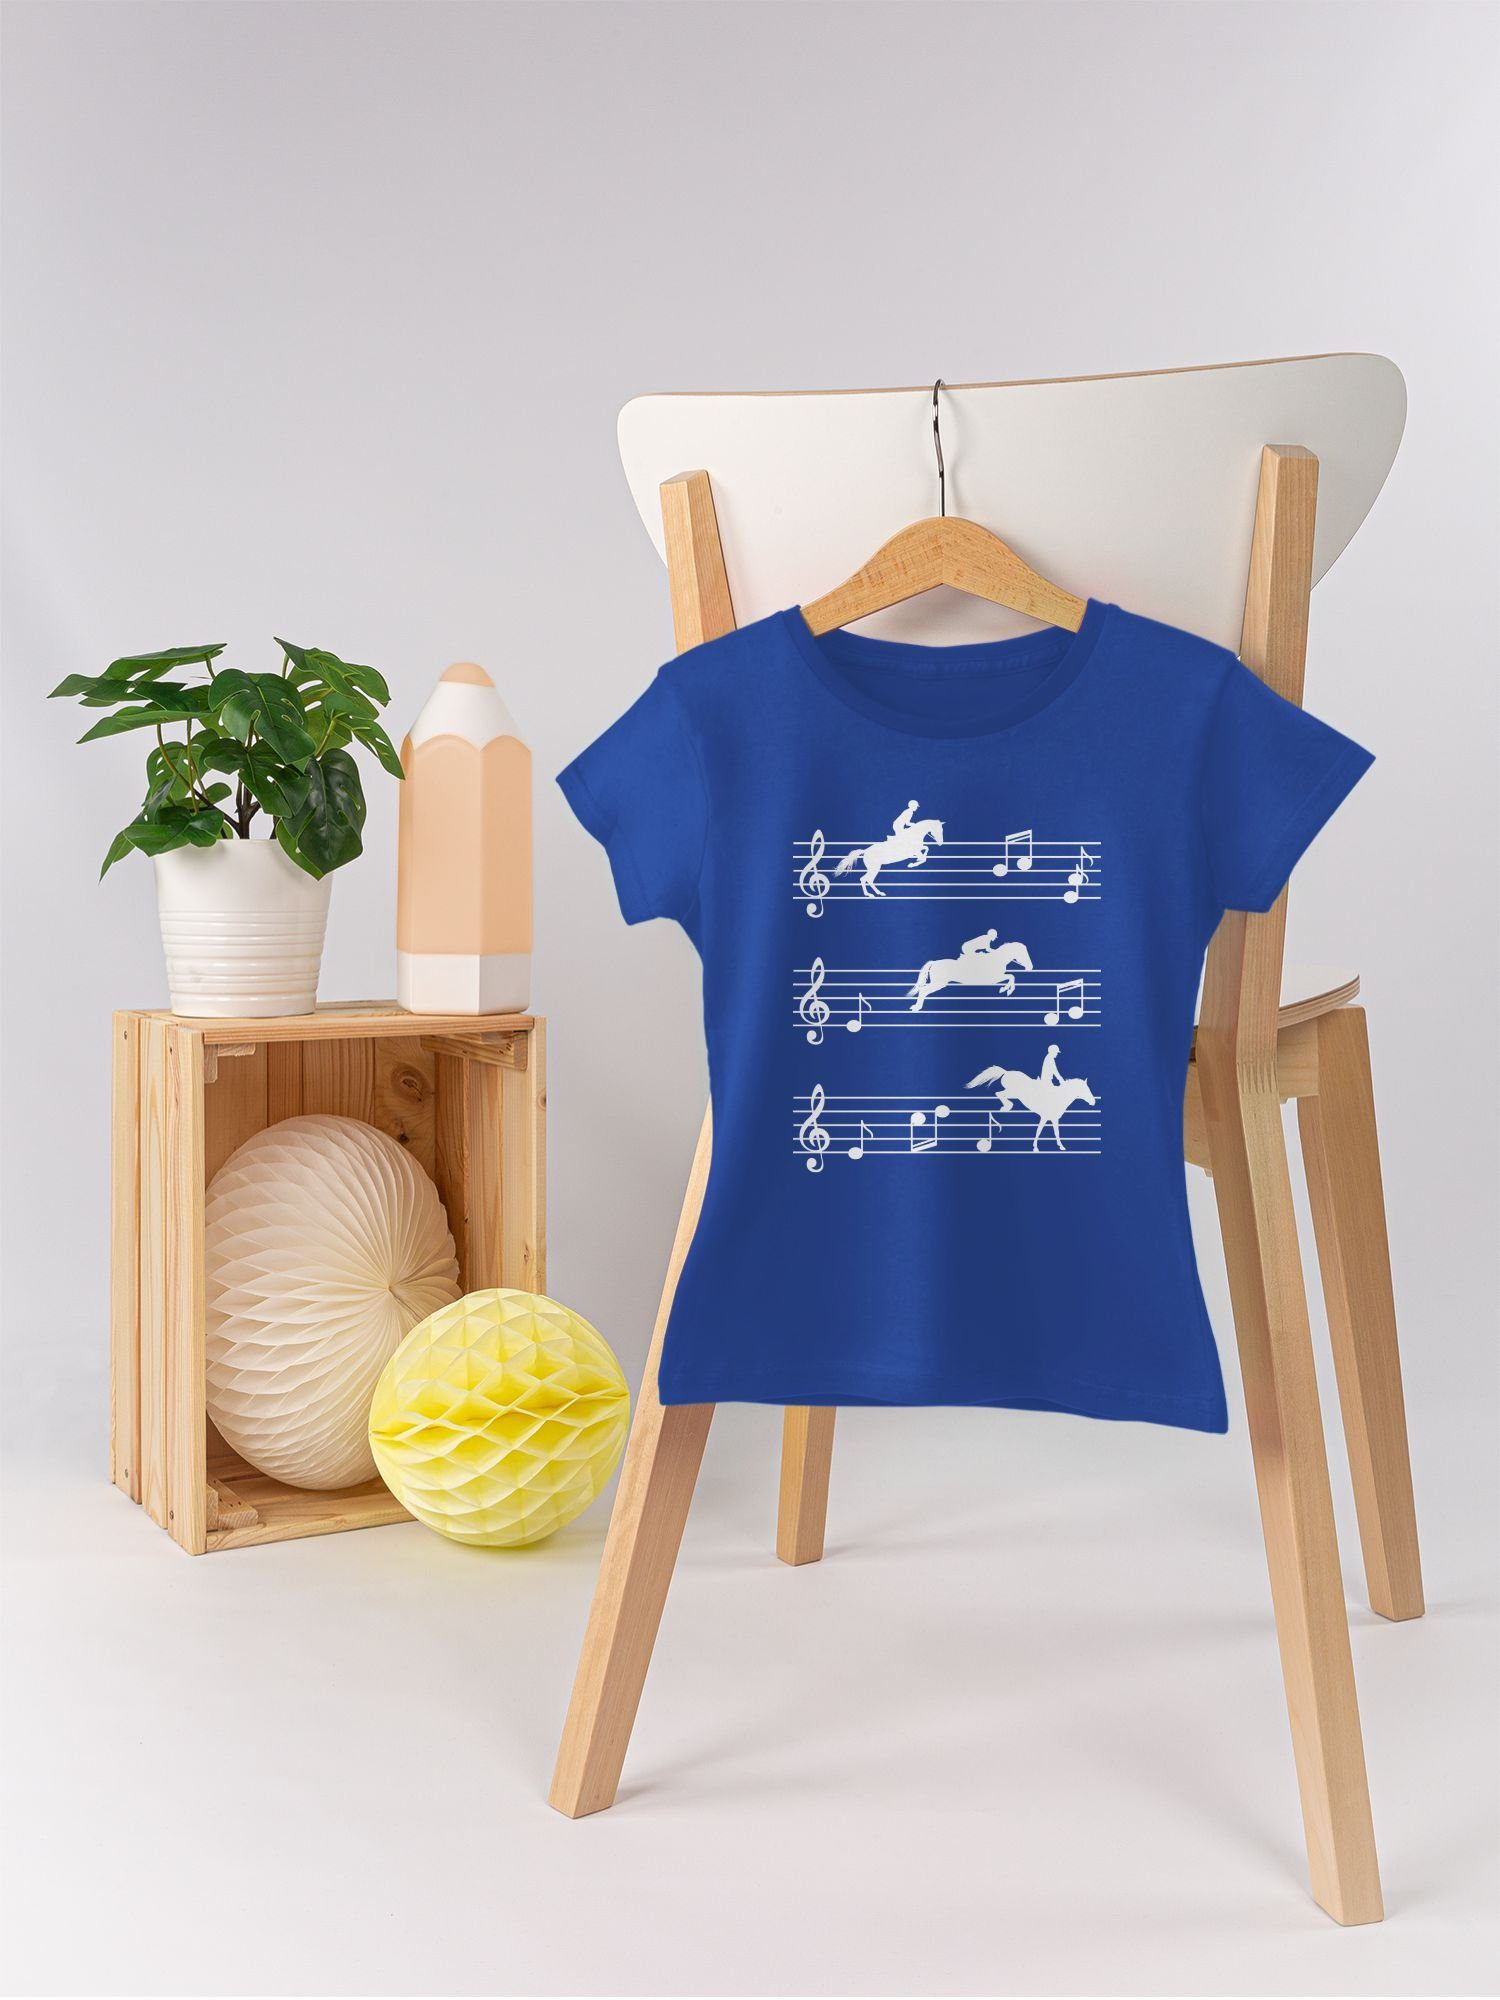 Shirtracer Pferde - 3 Pferd T-Shirt Musiknoten auf weiß Royalblau